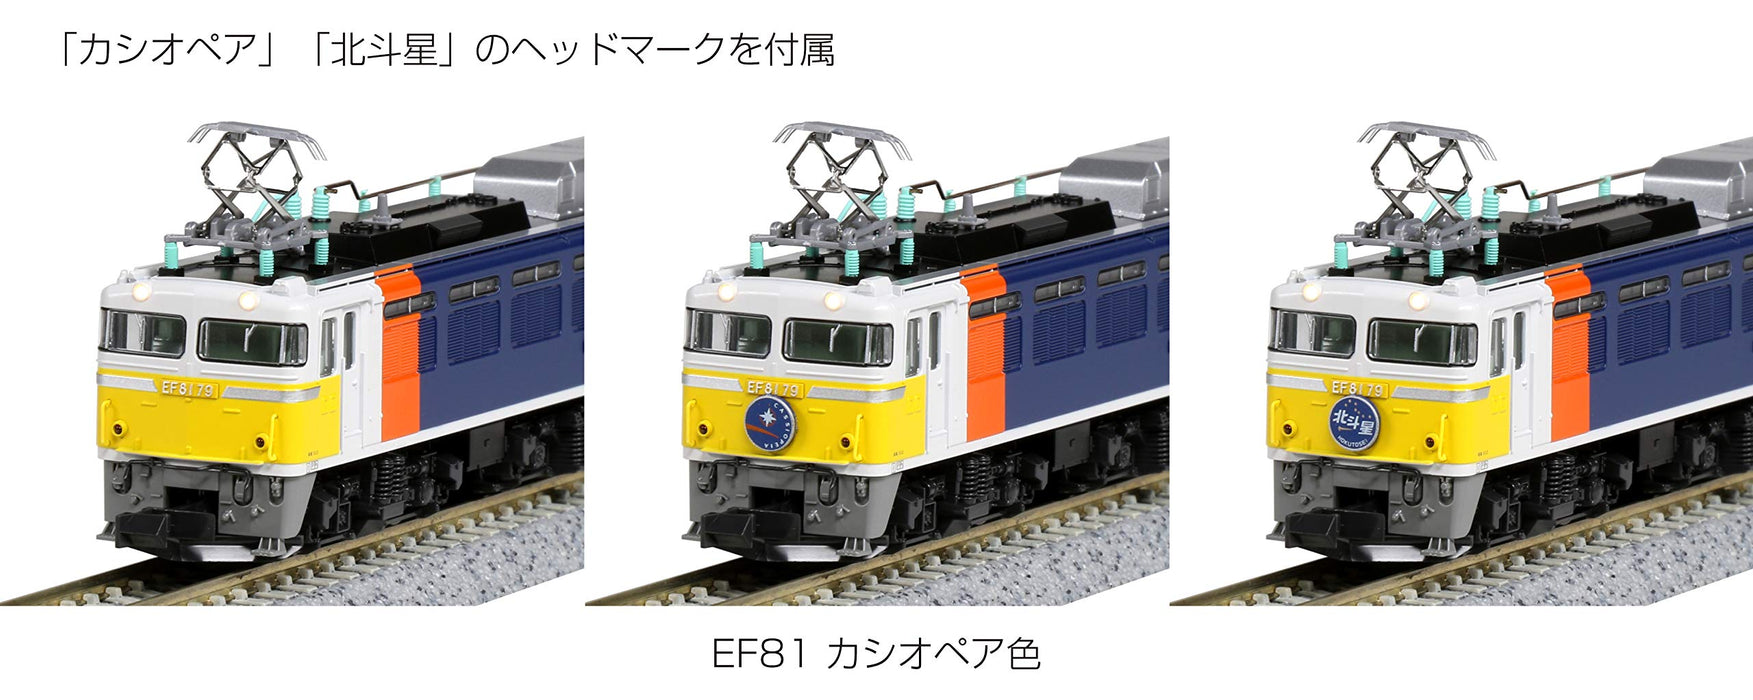 Modèle ferroviaire de locomotive électrique Kato N Gauge 3066-A en couleur Cassiopée